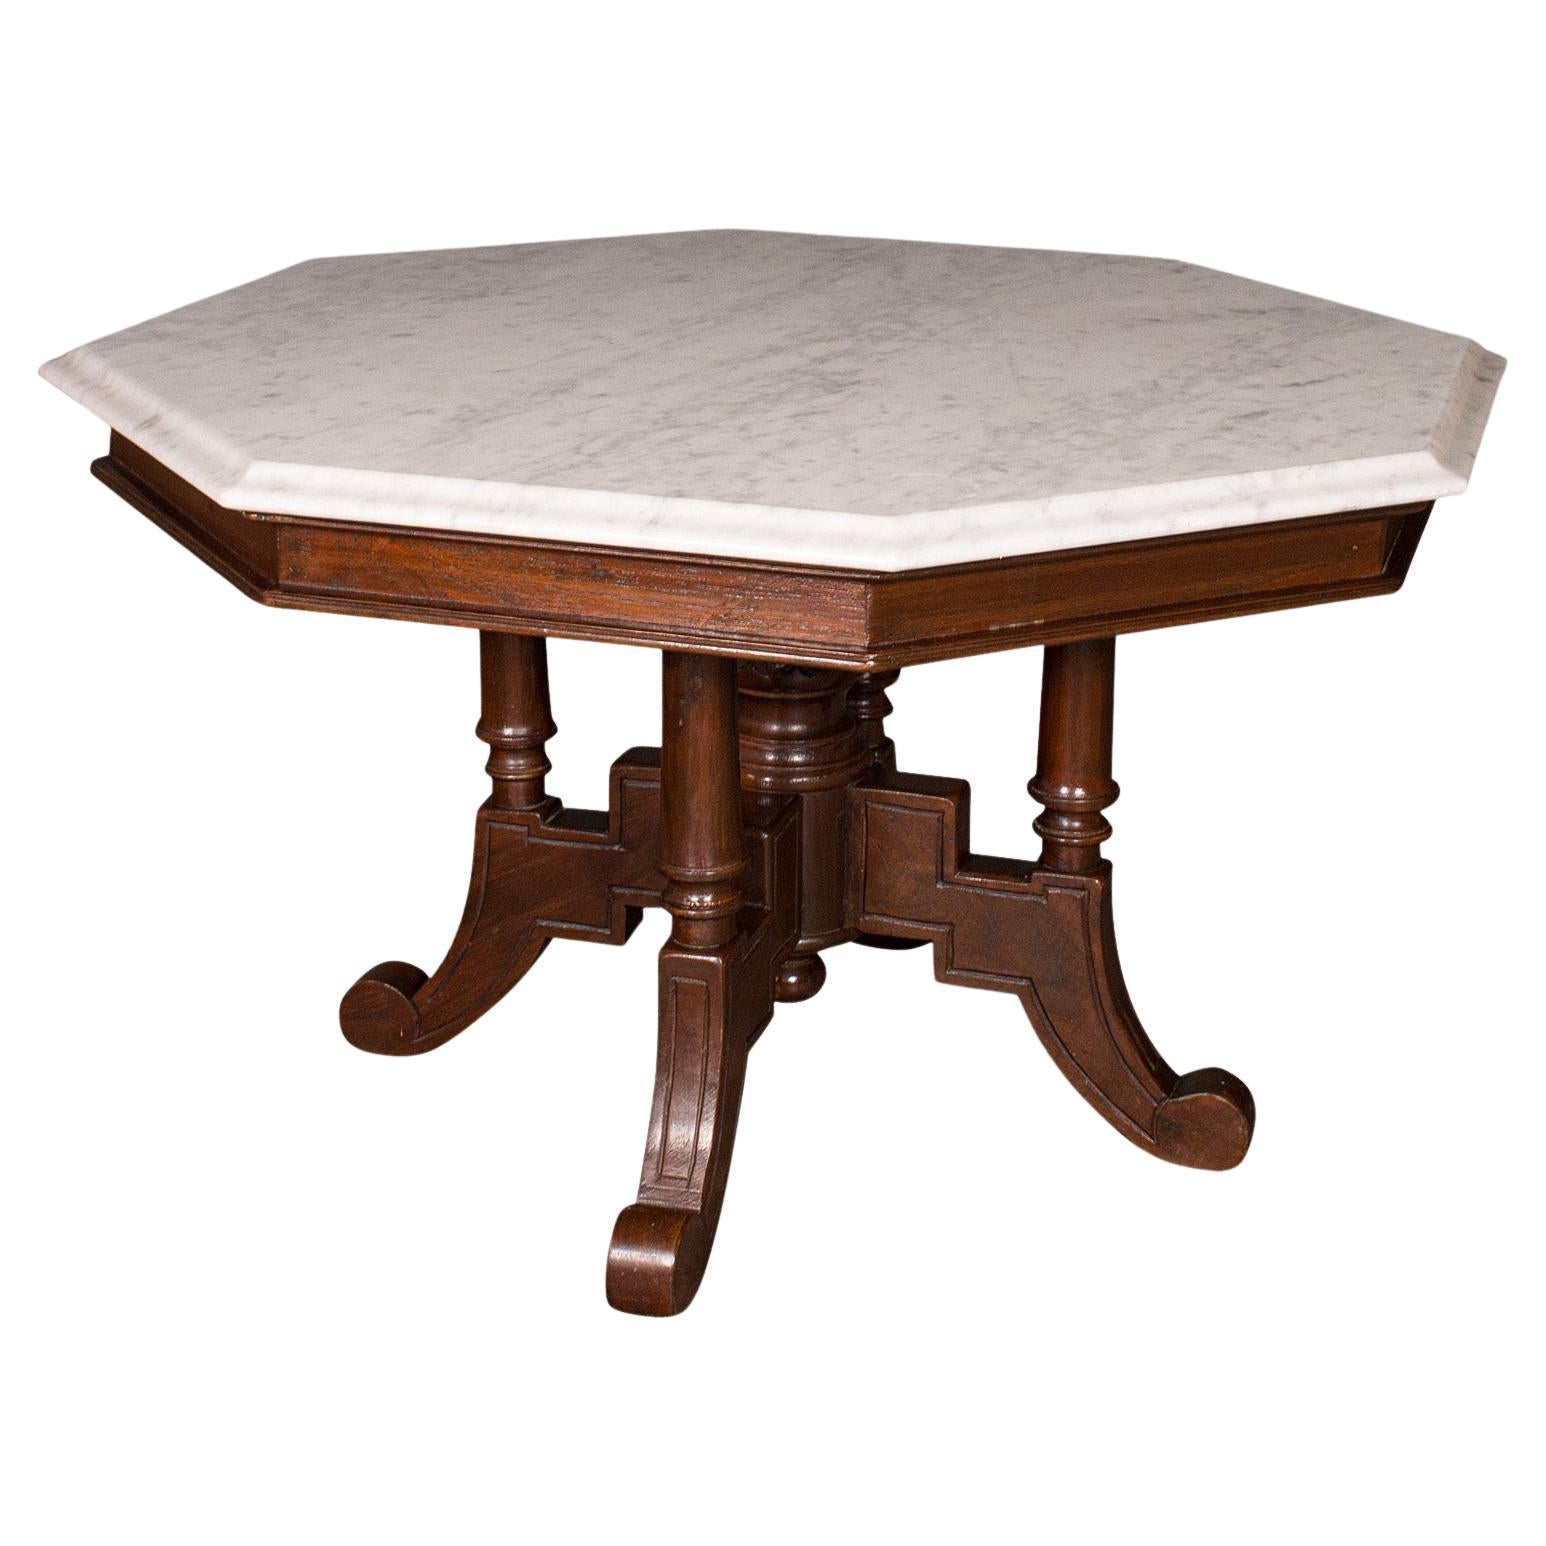 Ancienne table basse octogonale anglaise, marbre de Carrare, décorative, victorienne